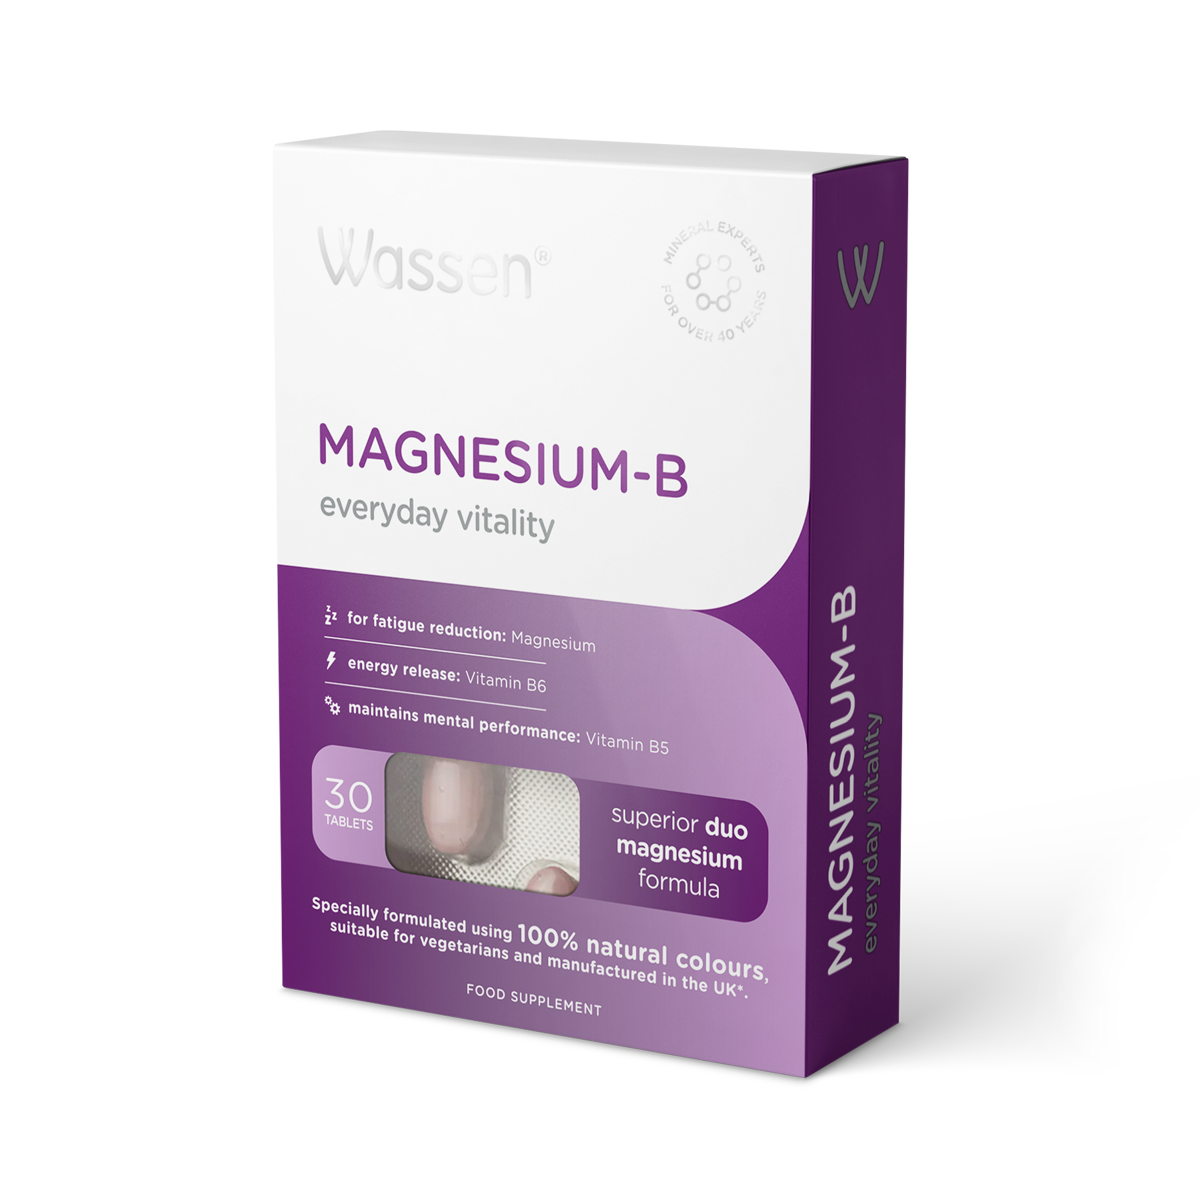 Magnesium-B